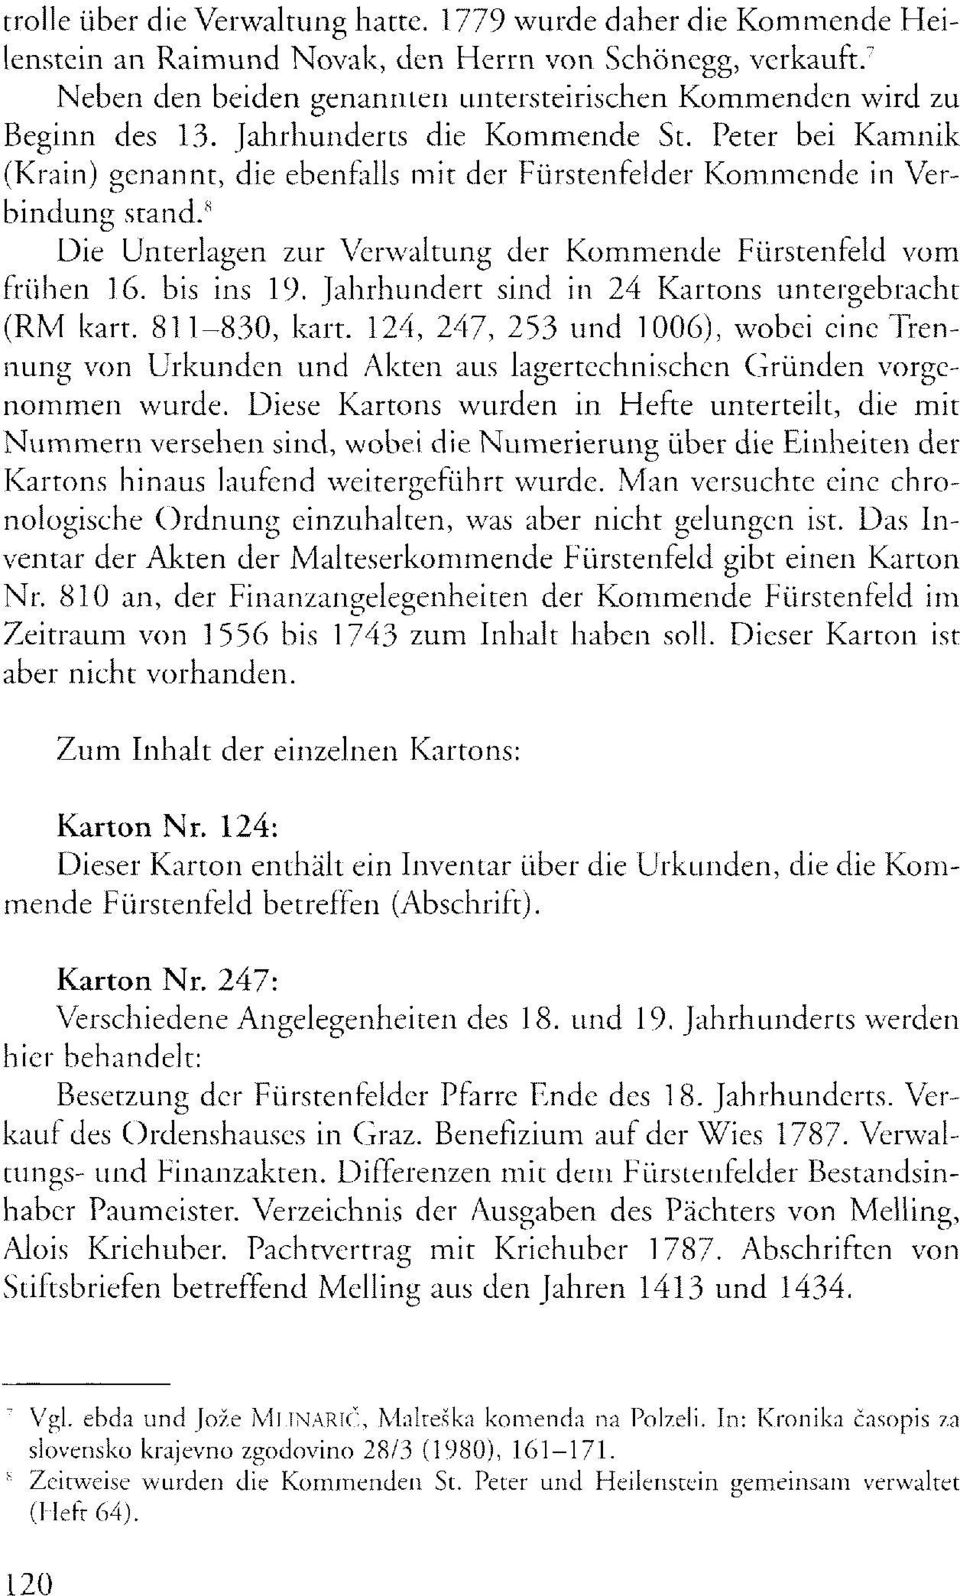 Peter bei Kamnik (Krain) genannt, die ebenfalls mit der Fürstenfelder Kommende in Verbindung stand. 8 Die Unterlagen zur Verwaltung der Kommende Fürstenfeld vom frühen 16. bis ins 19.